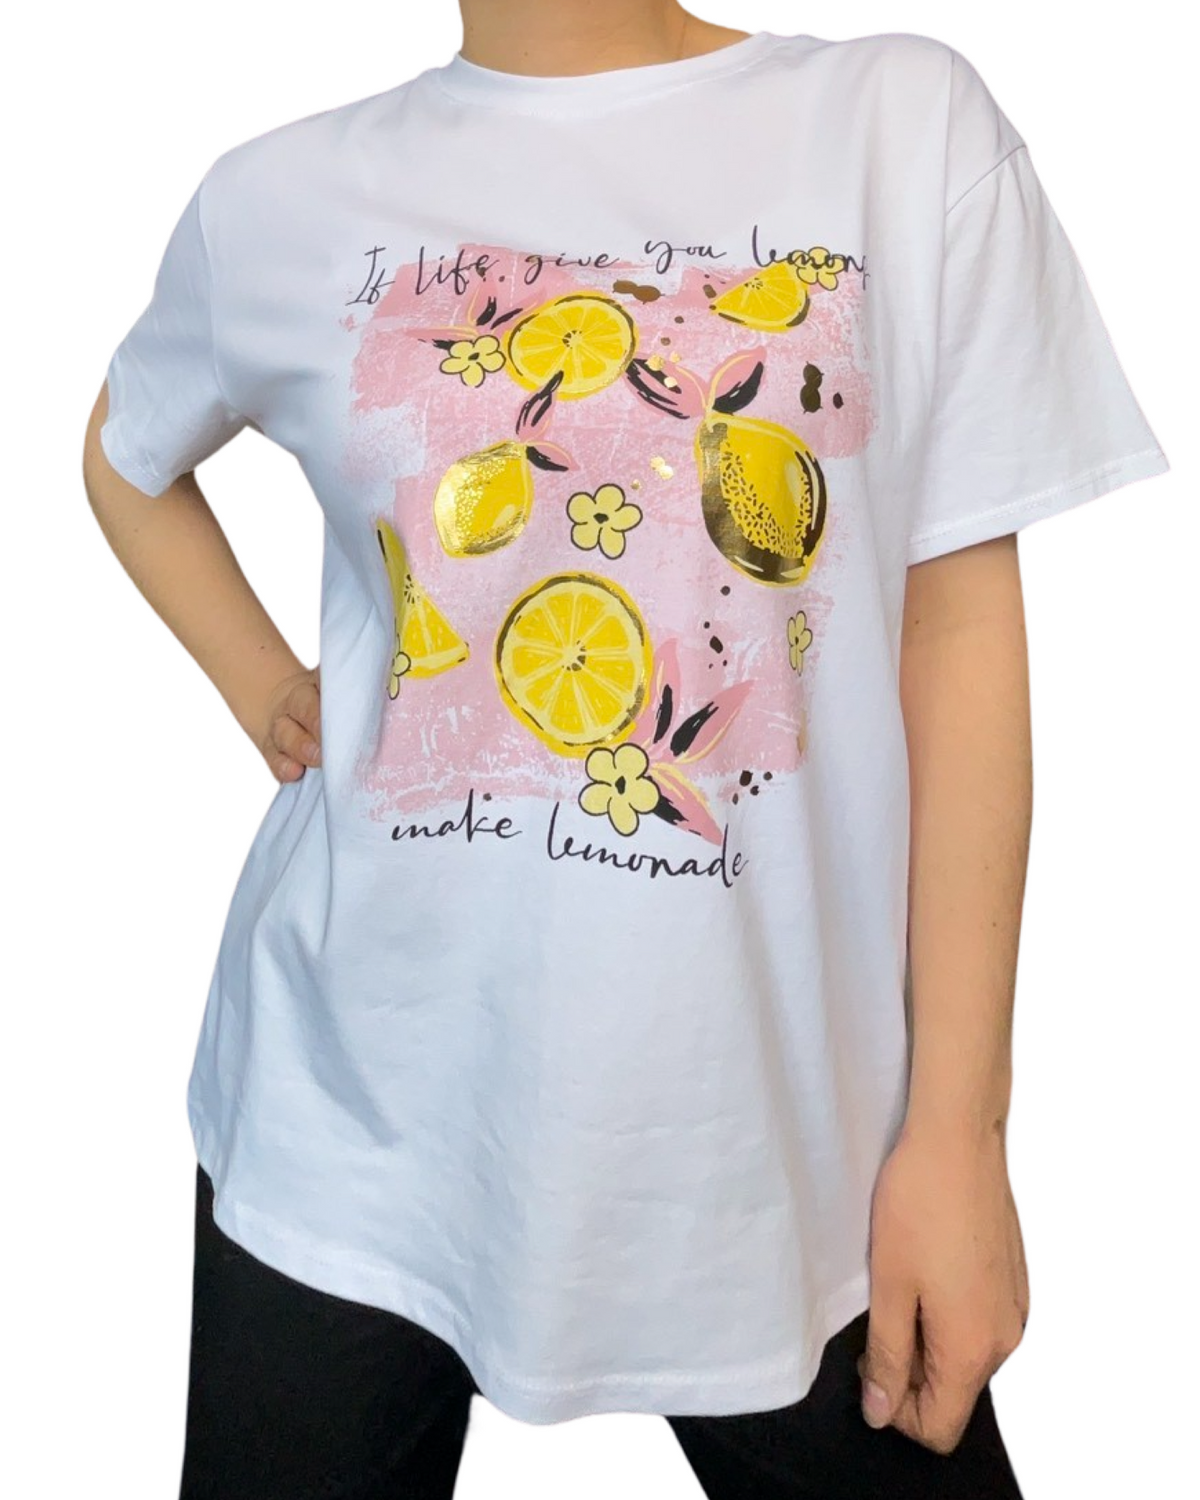 T-shirt blanc pour femme avec imprimé de citrons jaunes.